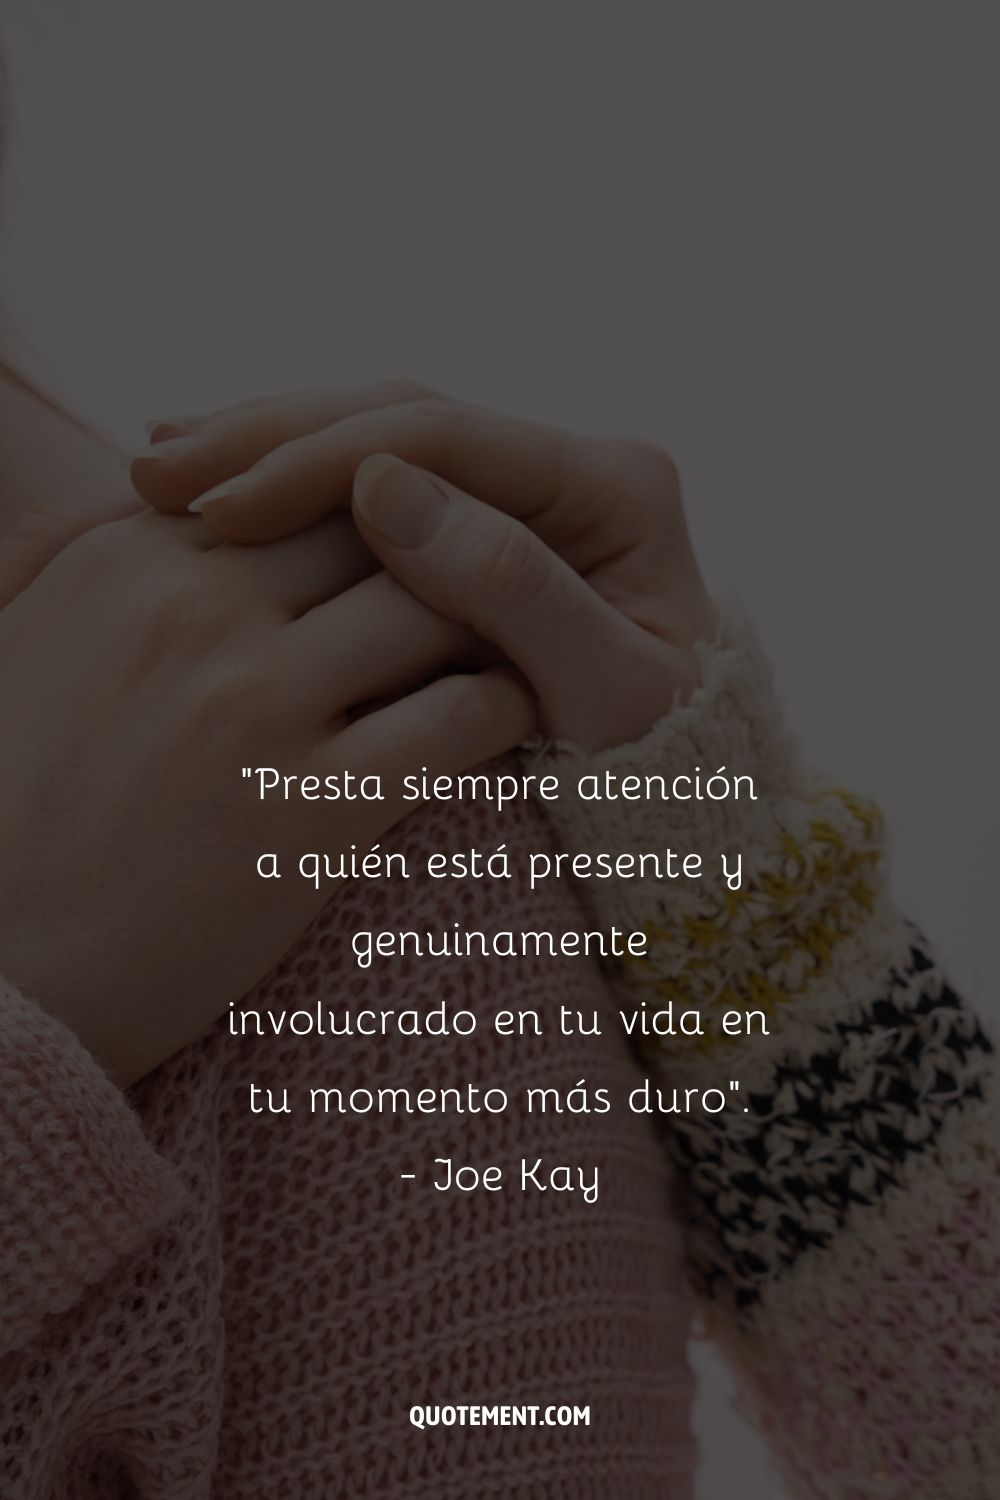 Presta siempre atención a quién está presente y genuinamente involucrado en tu vida en tu momento más duro". - Joe Kay